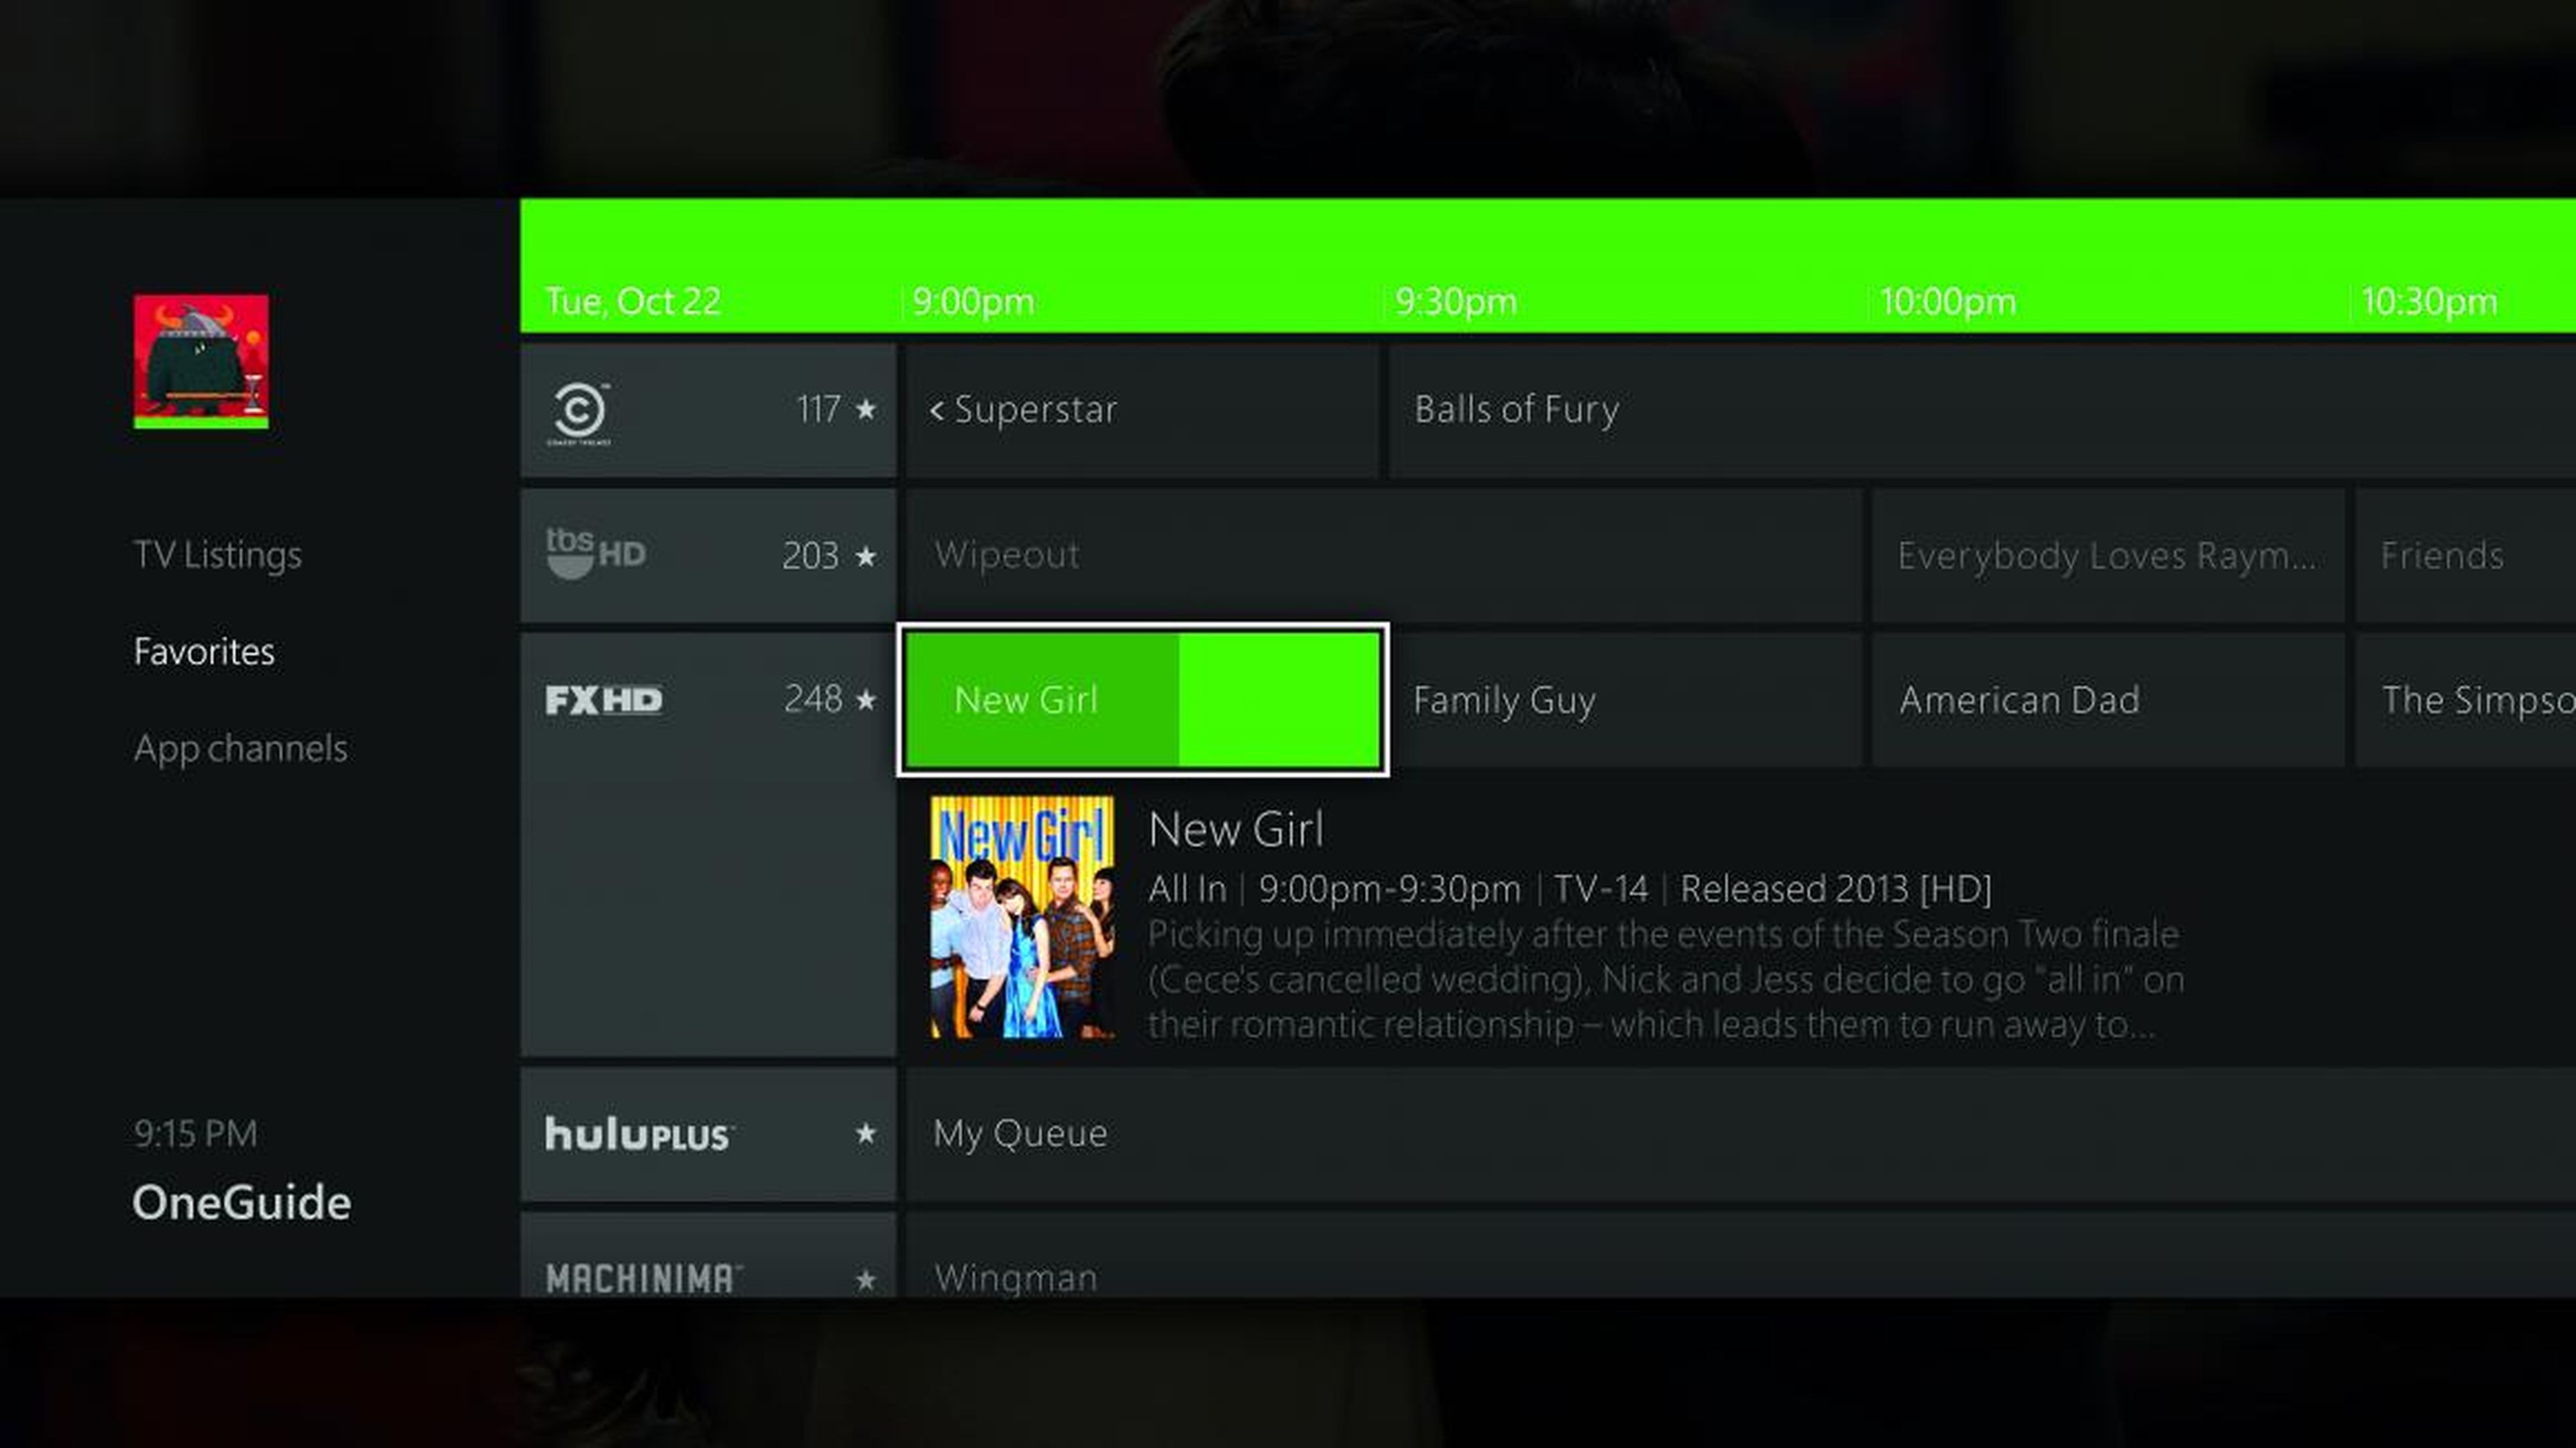 La "OneGuide" de Xbox One es una aplicación pensada para ver todas las funciones y cartelera de la televisión en un solo lugar.